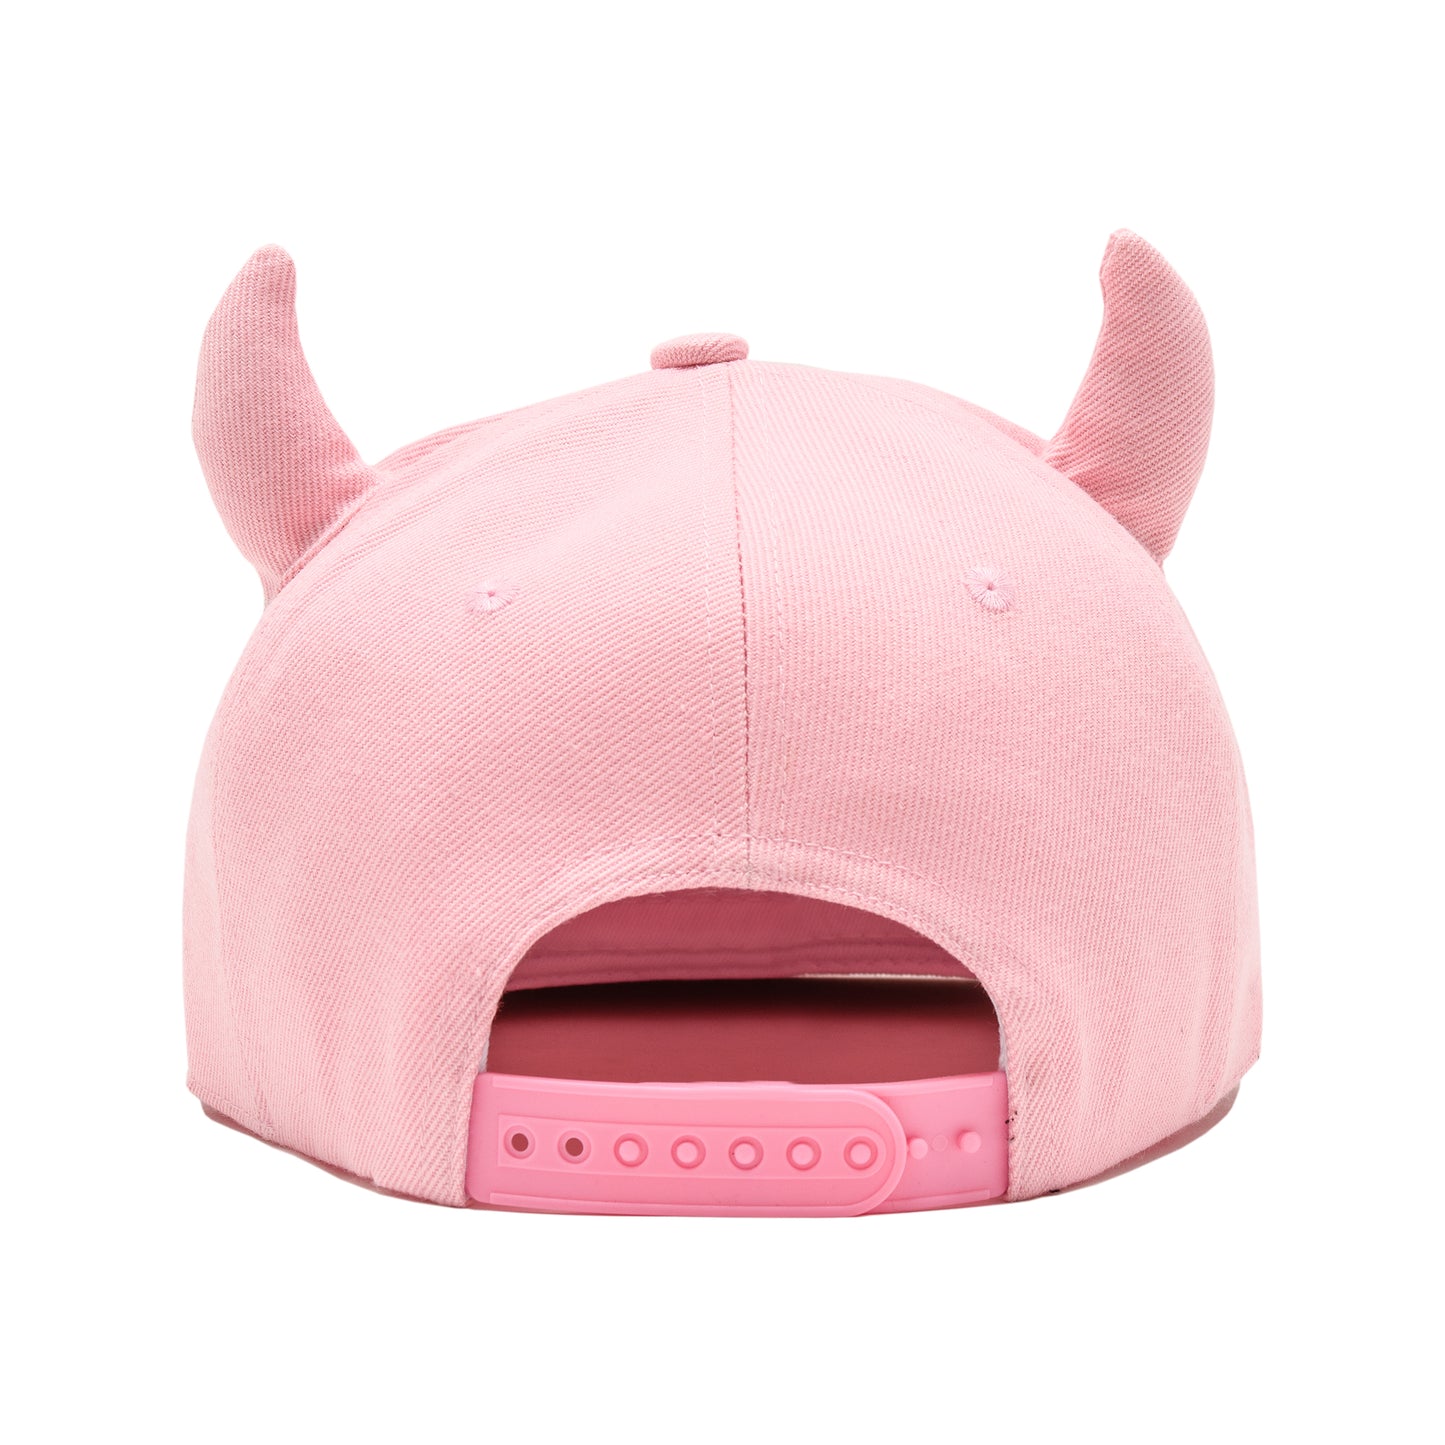 Horns Snapback Hat - Pink